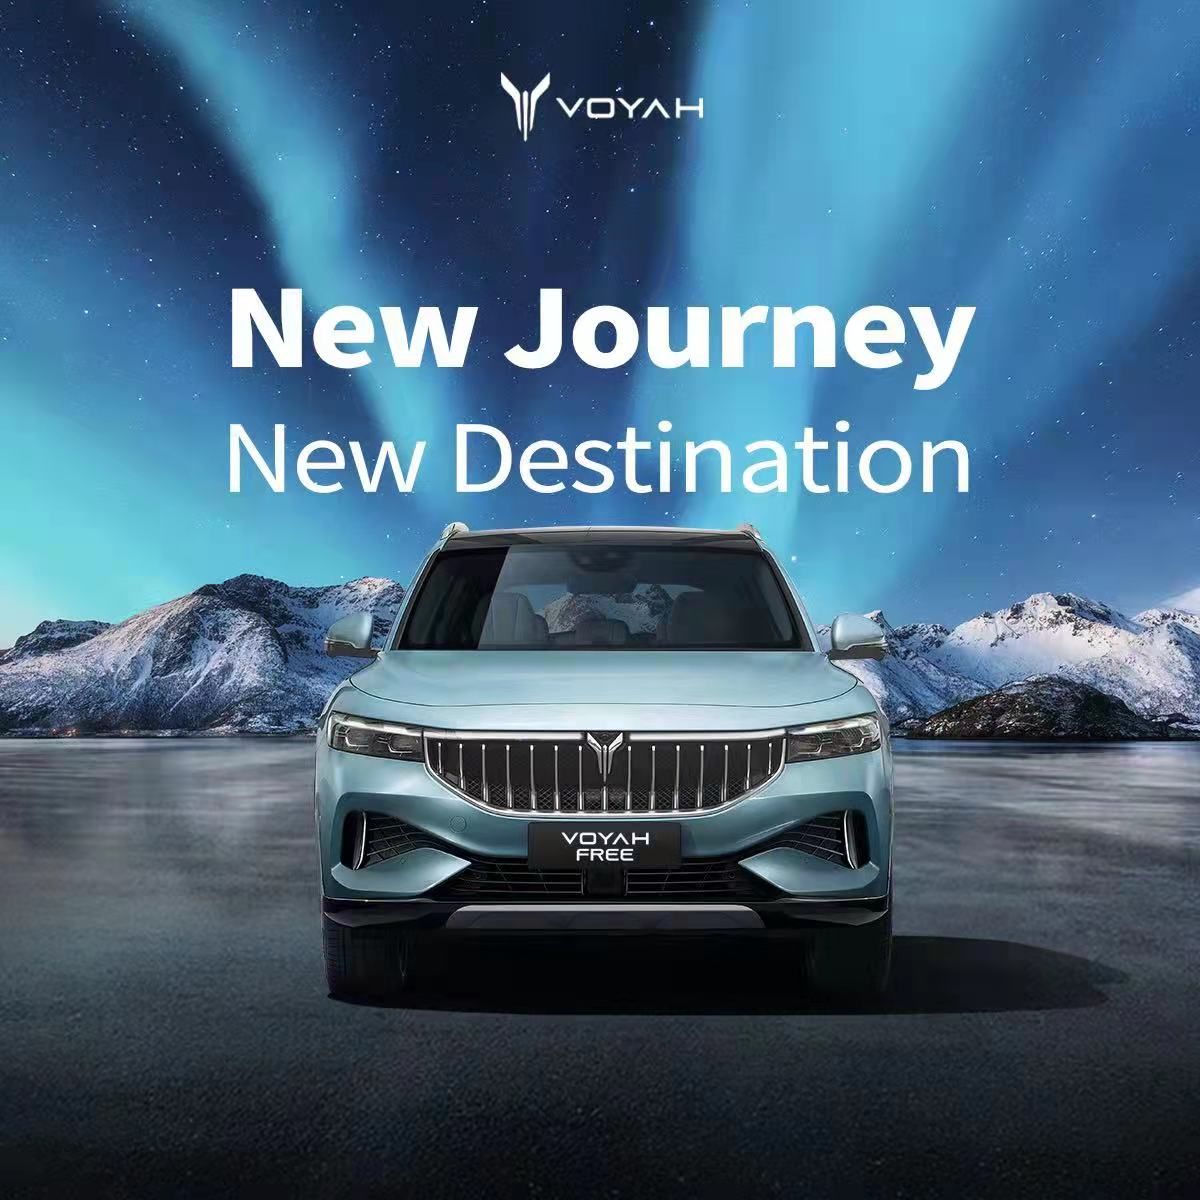 Високотехнологічний бренд електромобілів VOYAH офіційно представлений у Норвегії.